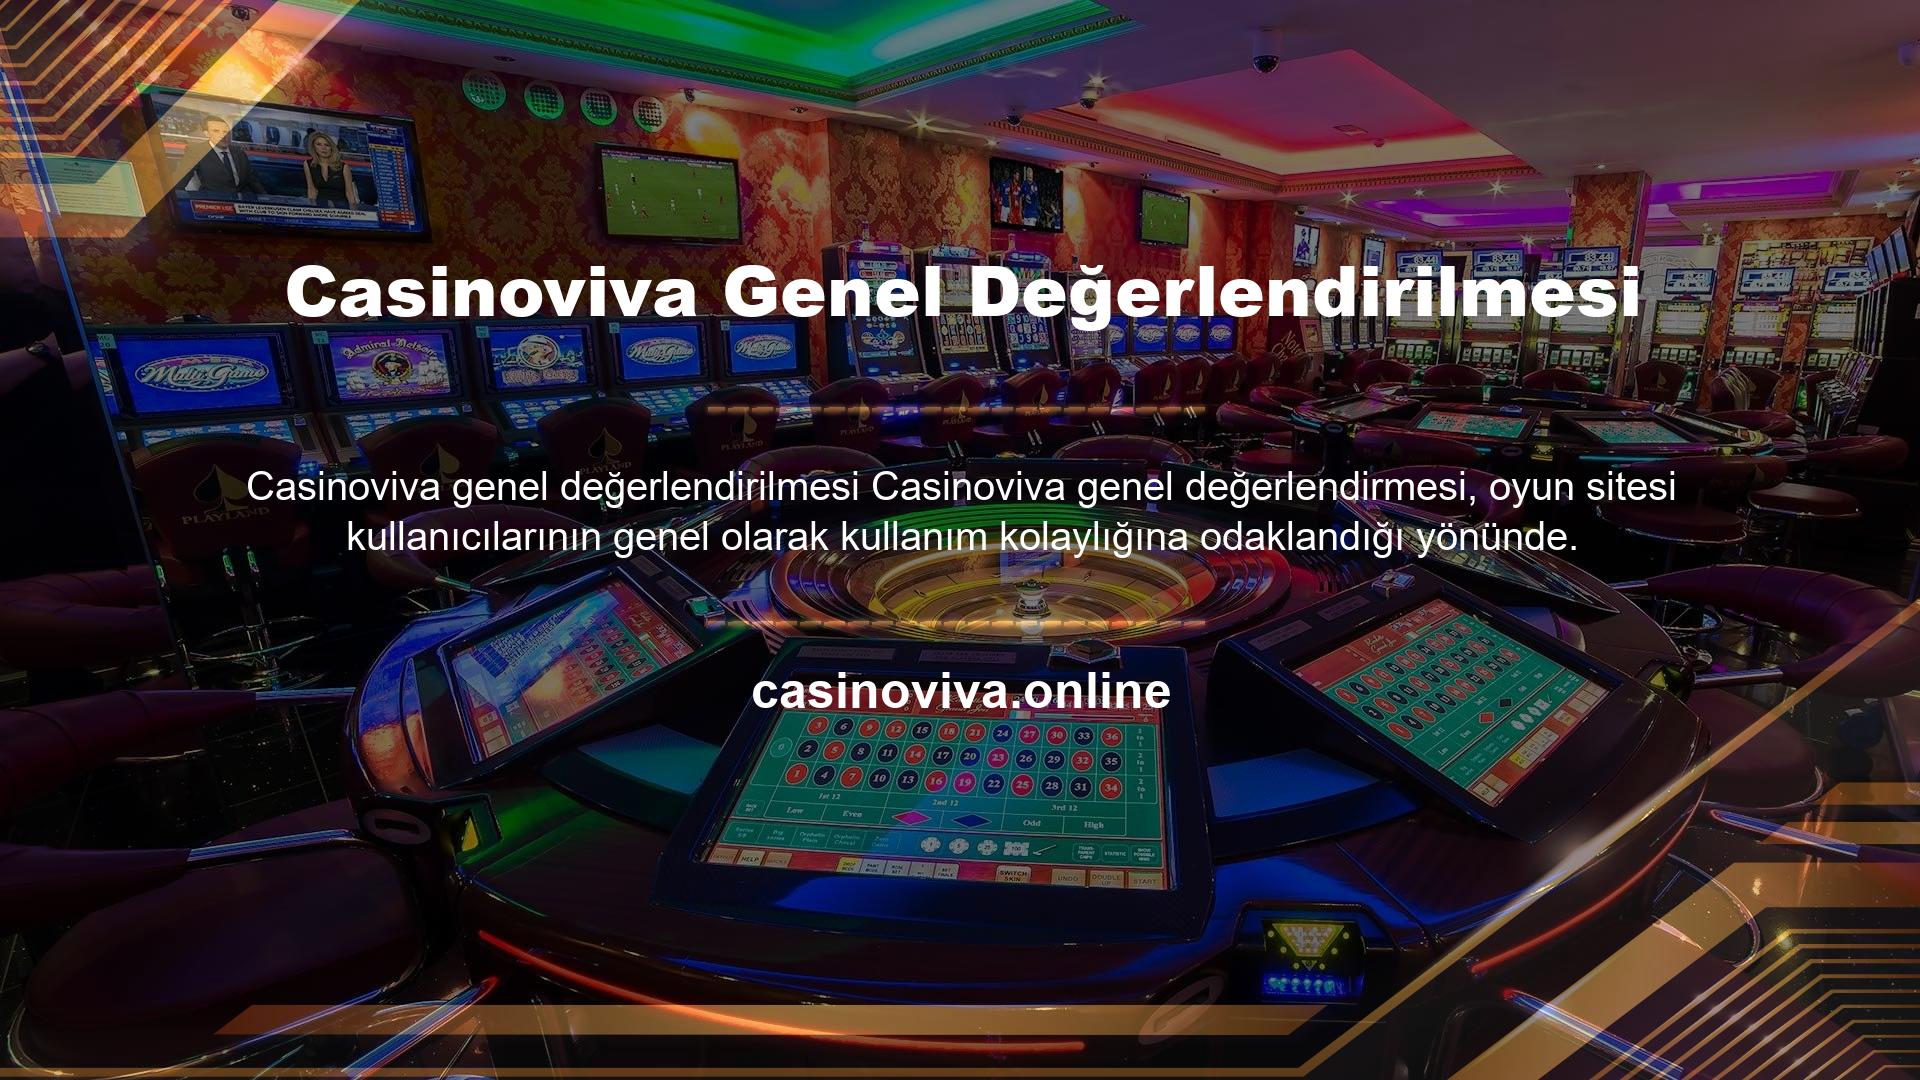 Casinoviva Genel Değerlendirilmesi